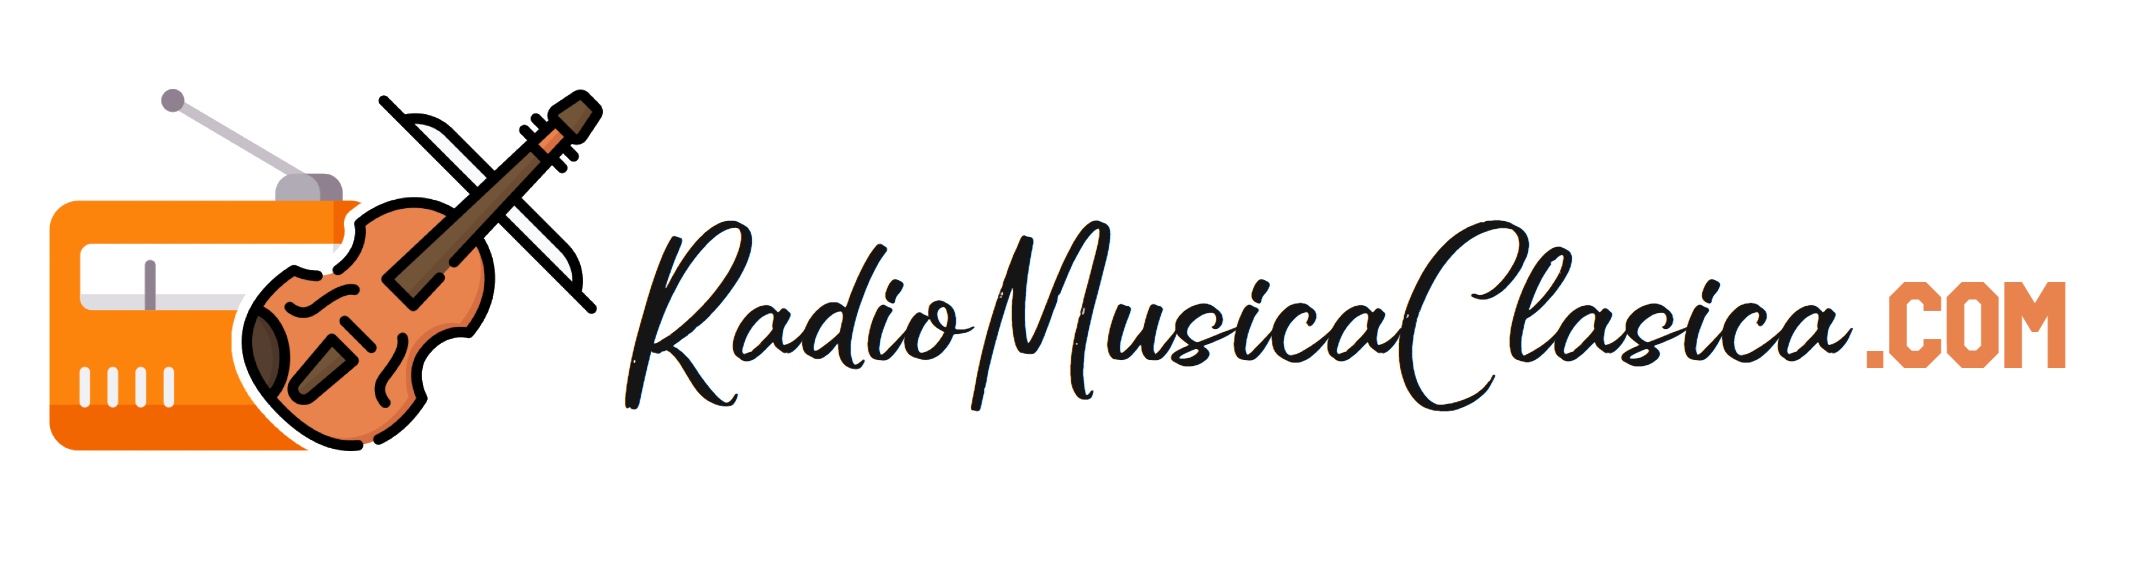 Radio Musica Clasica | www.radiomusicaclasica.com